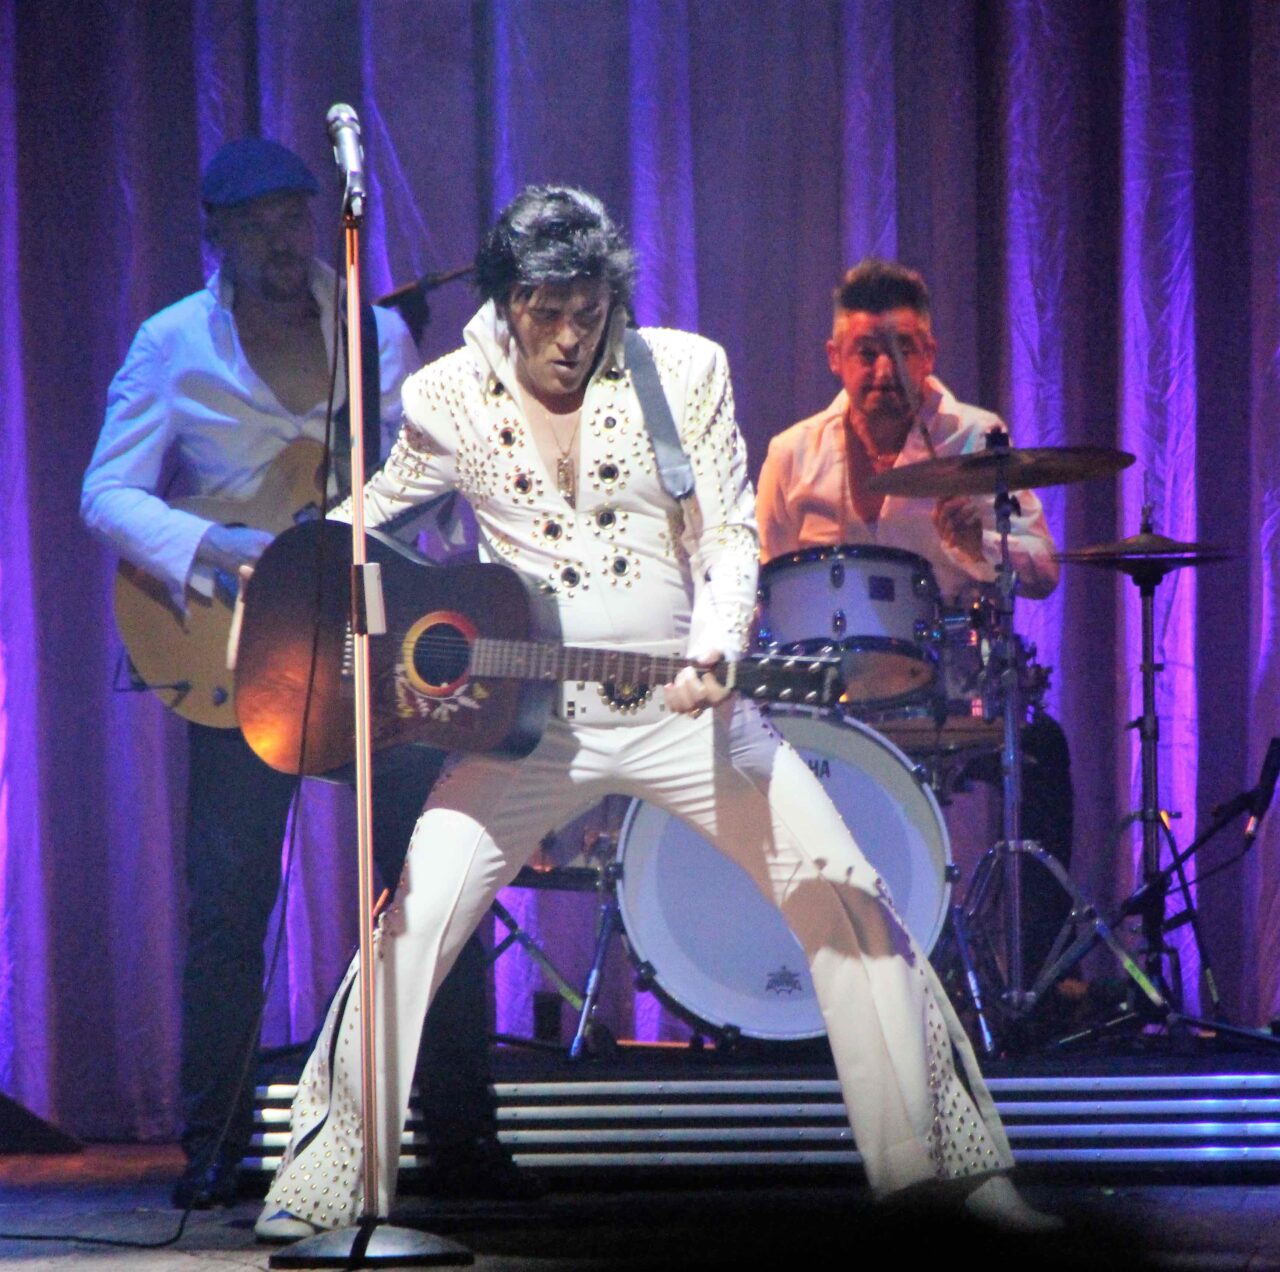 Al Teatro della Luna per la prima volta Elvis The Musical